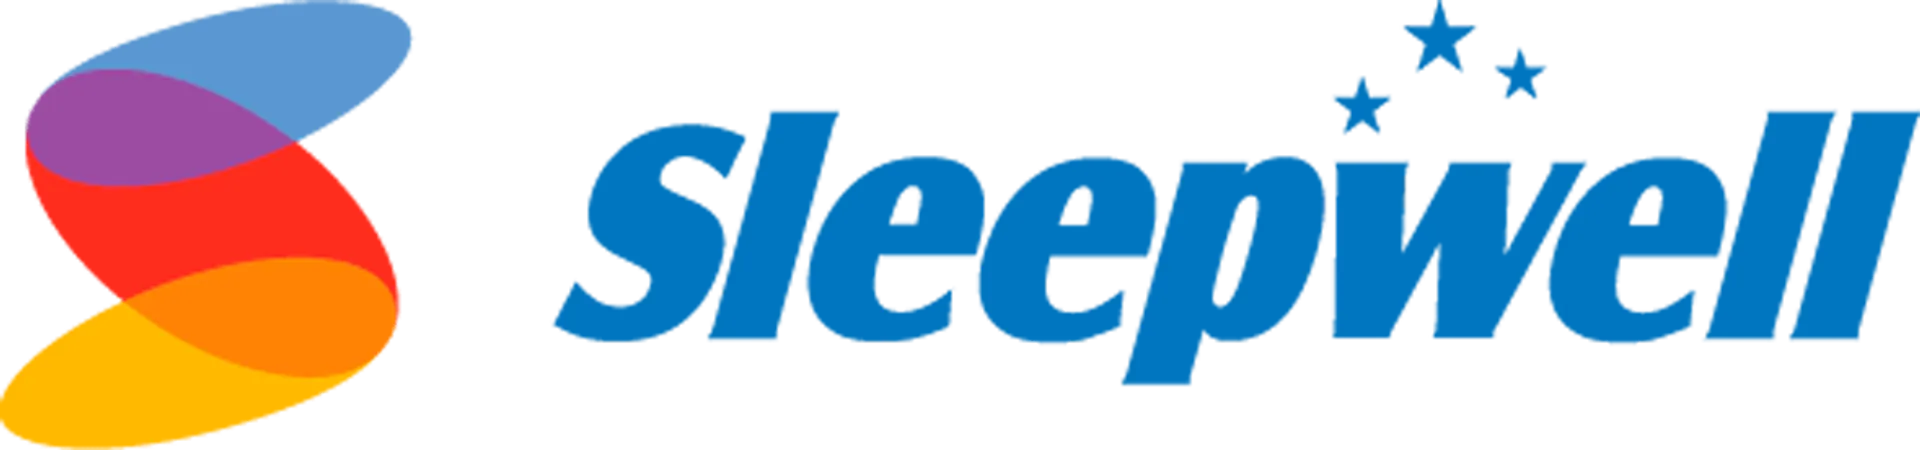 SLEEPWELL logo. Current weekly ad